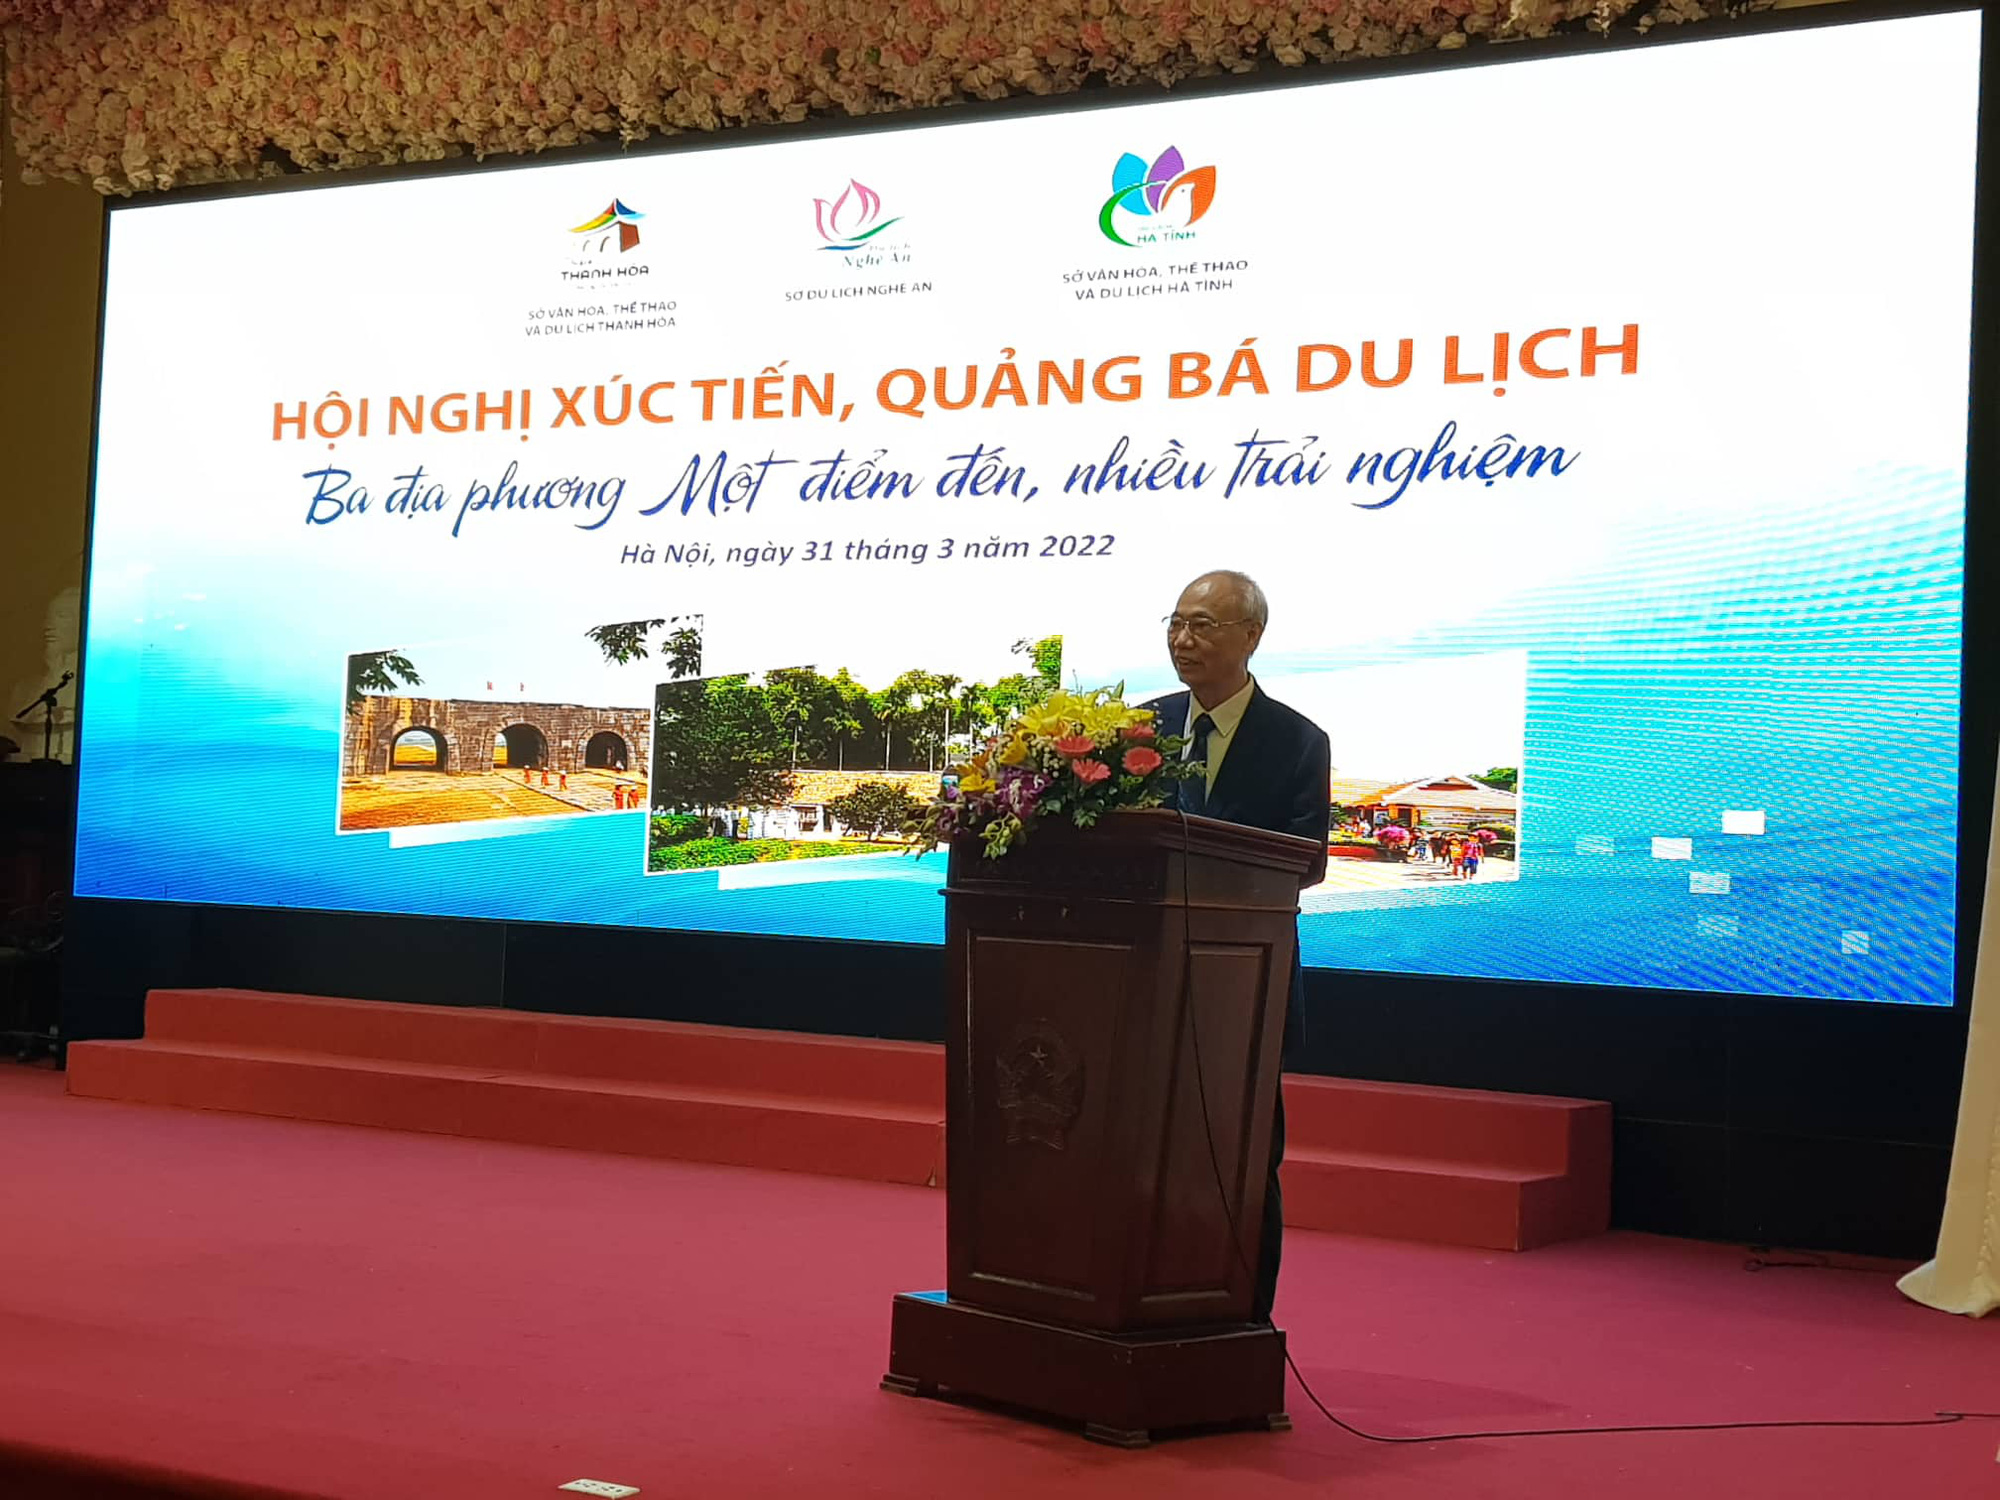 Thanh Hóa, Nghệ An cùng nắm tay nhau hút khách mùa du lịch mùa hè 2022 - Ảnh 2.